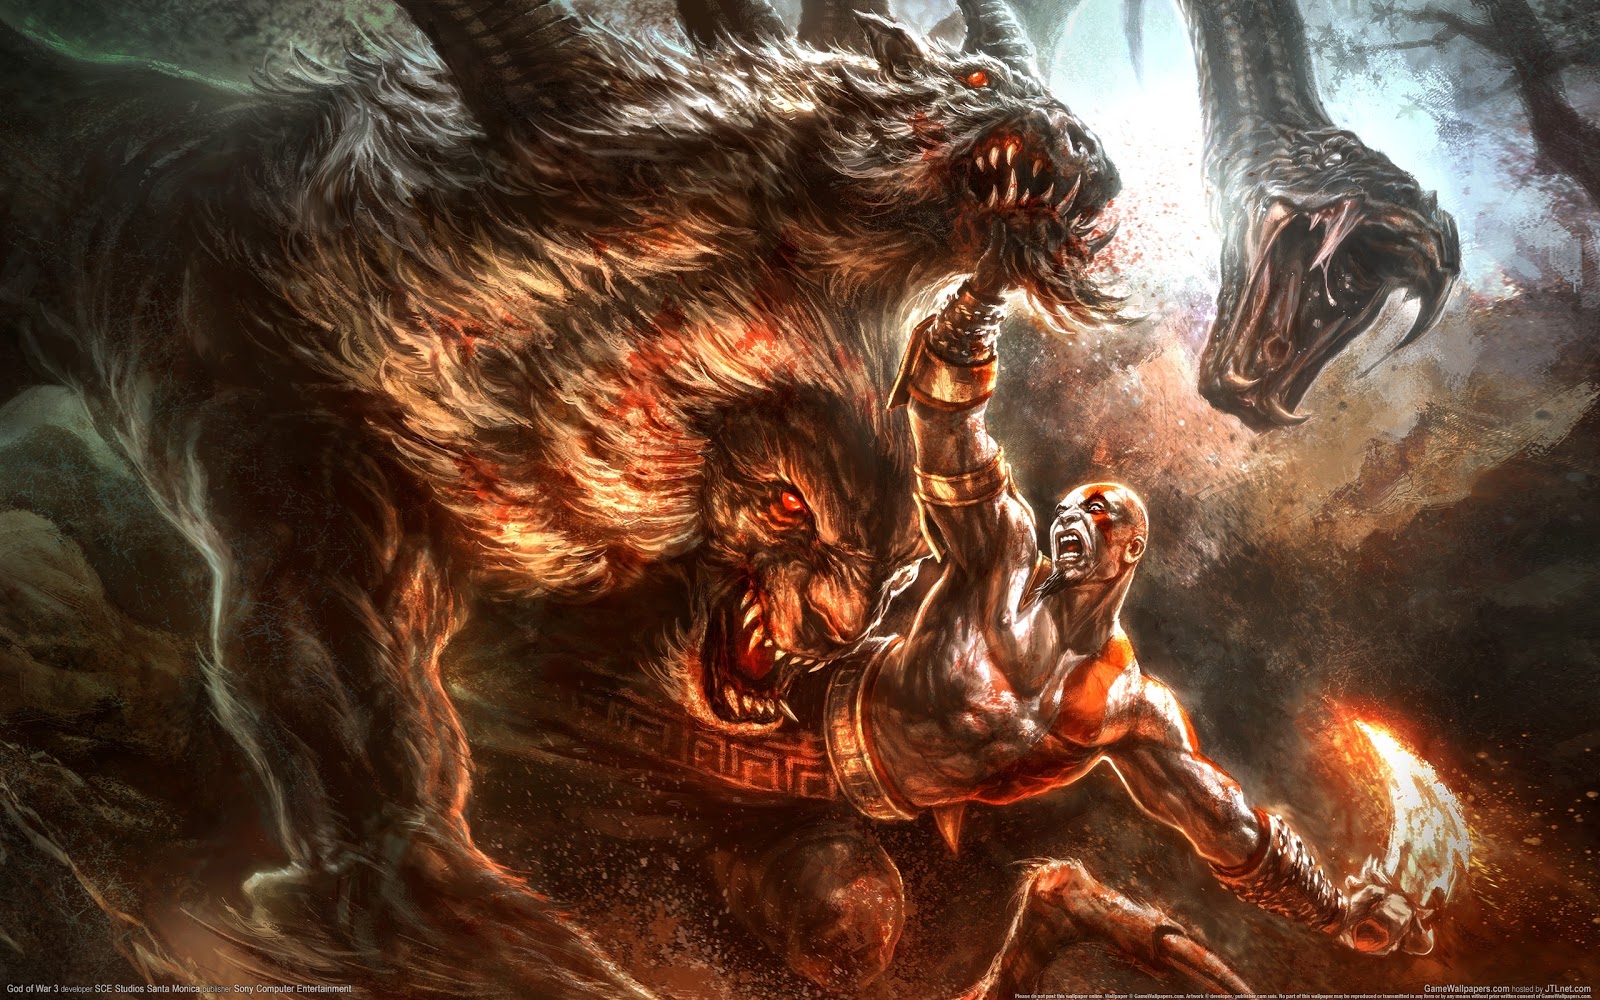  God of War Kratos luchando contra sus enemigos   Wallpaper 1600x1000